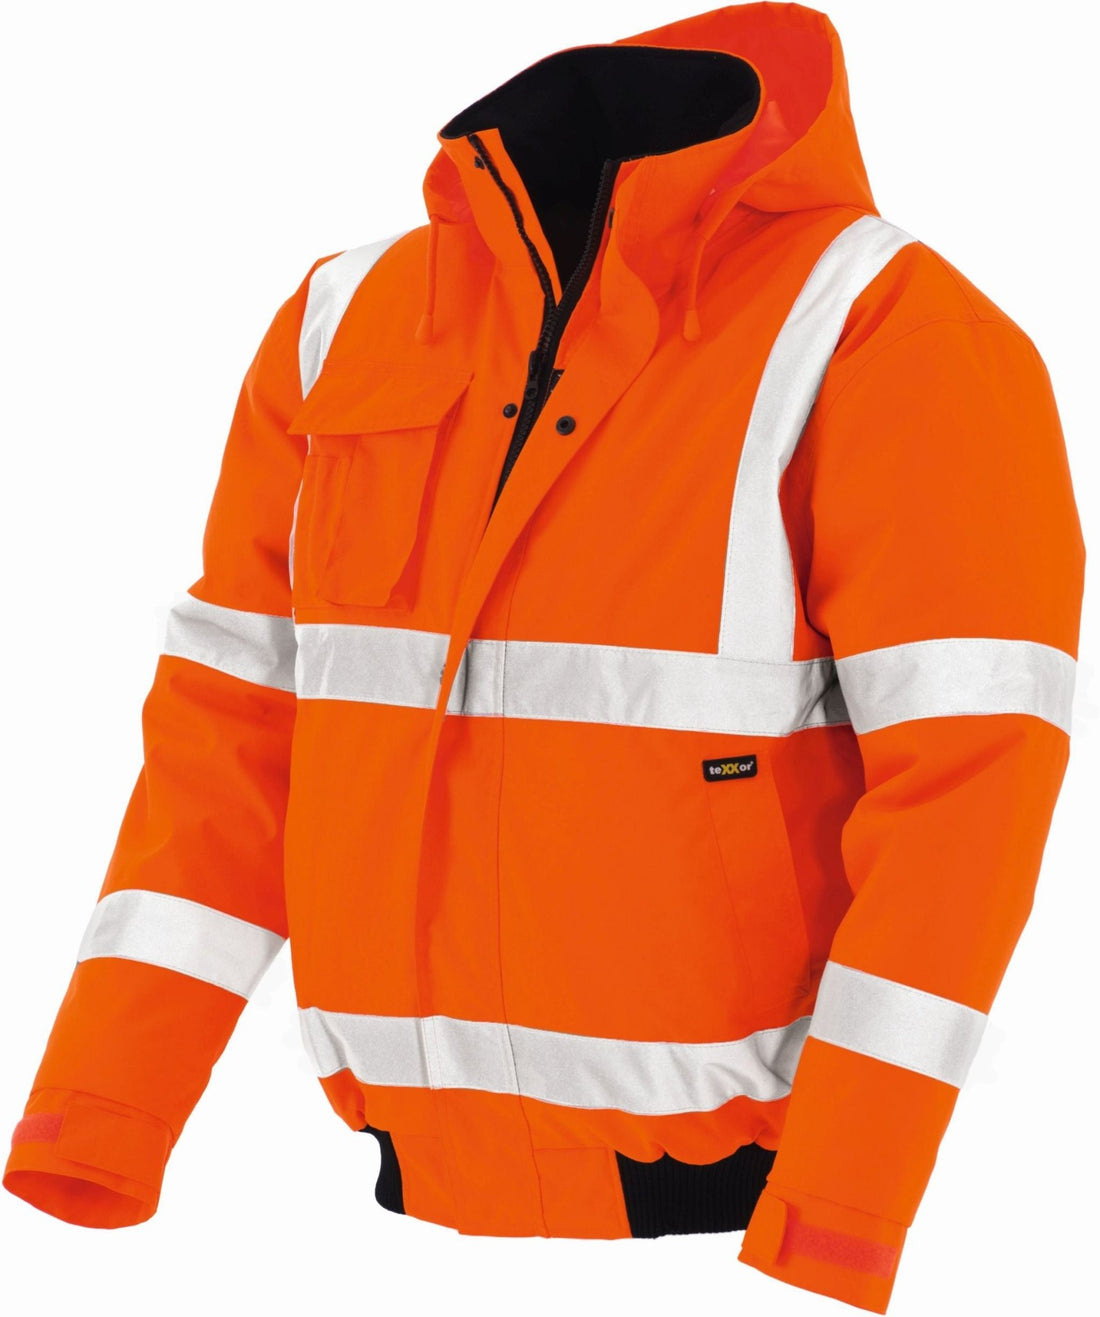 Die perfekte Warnschutz Jacke für Deinen Einsatzbereich